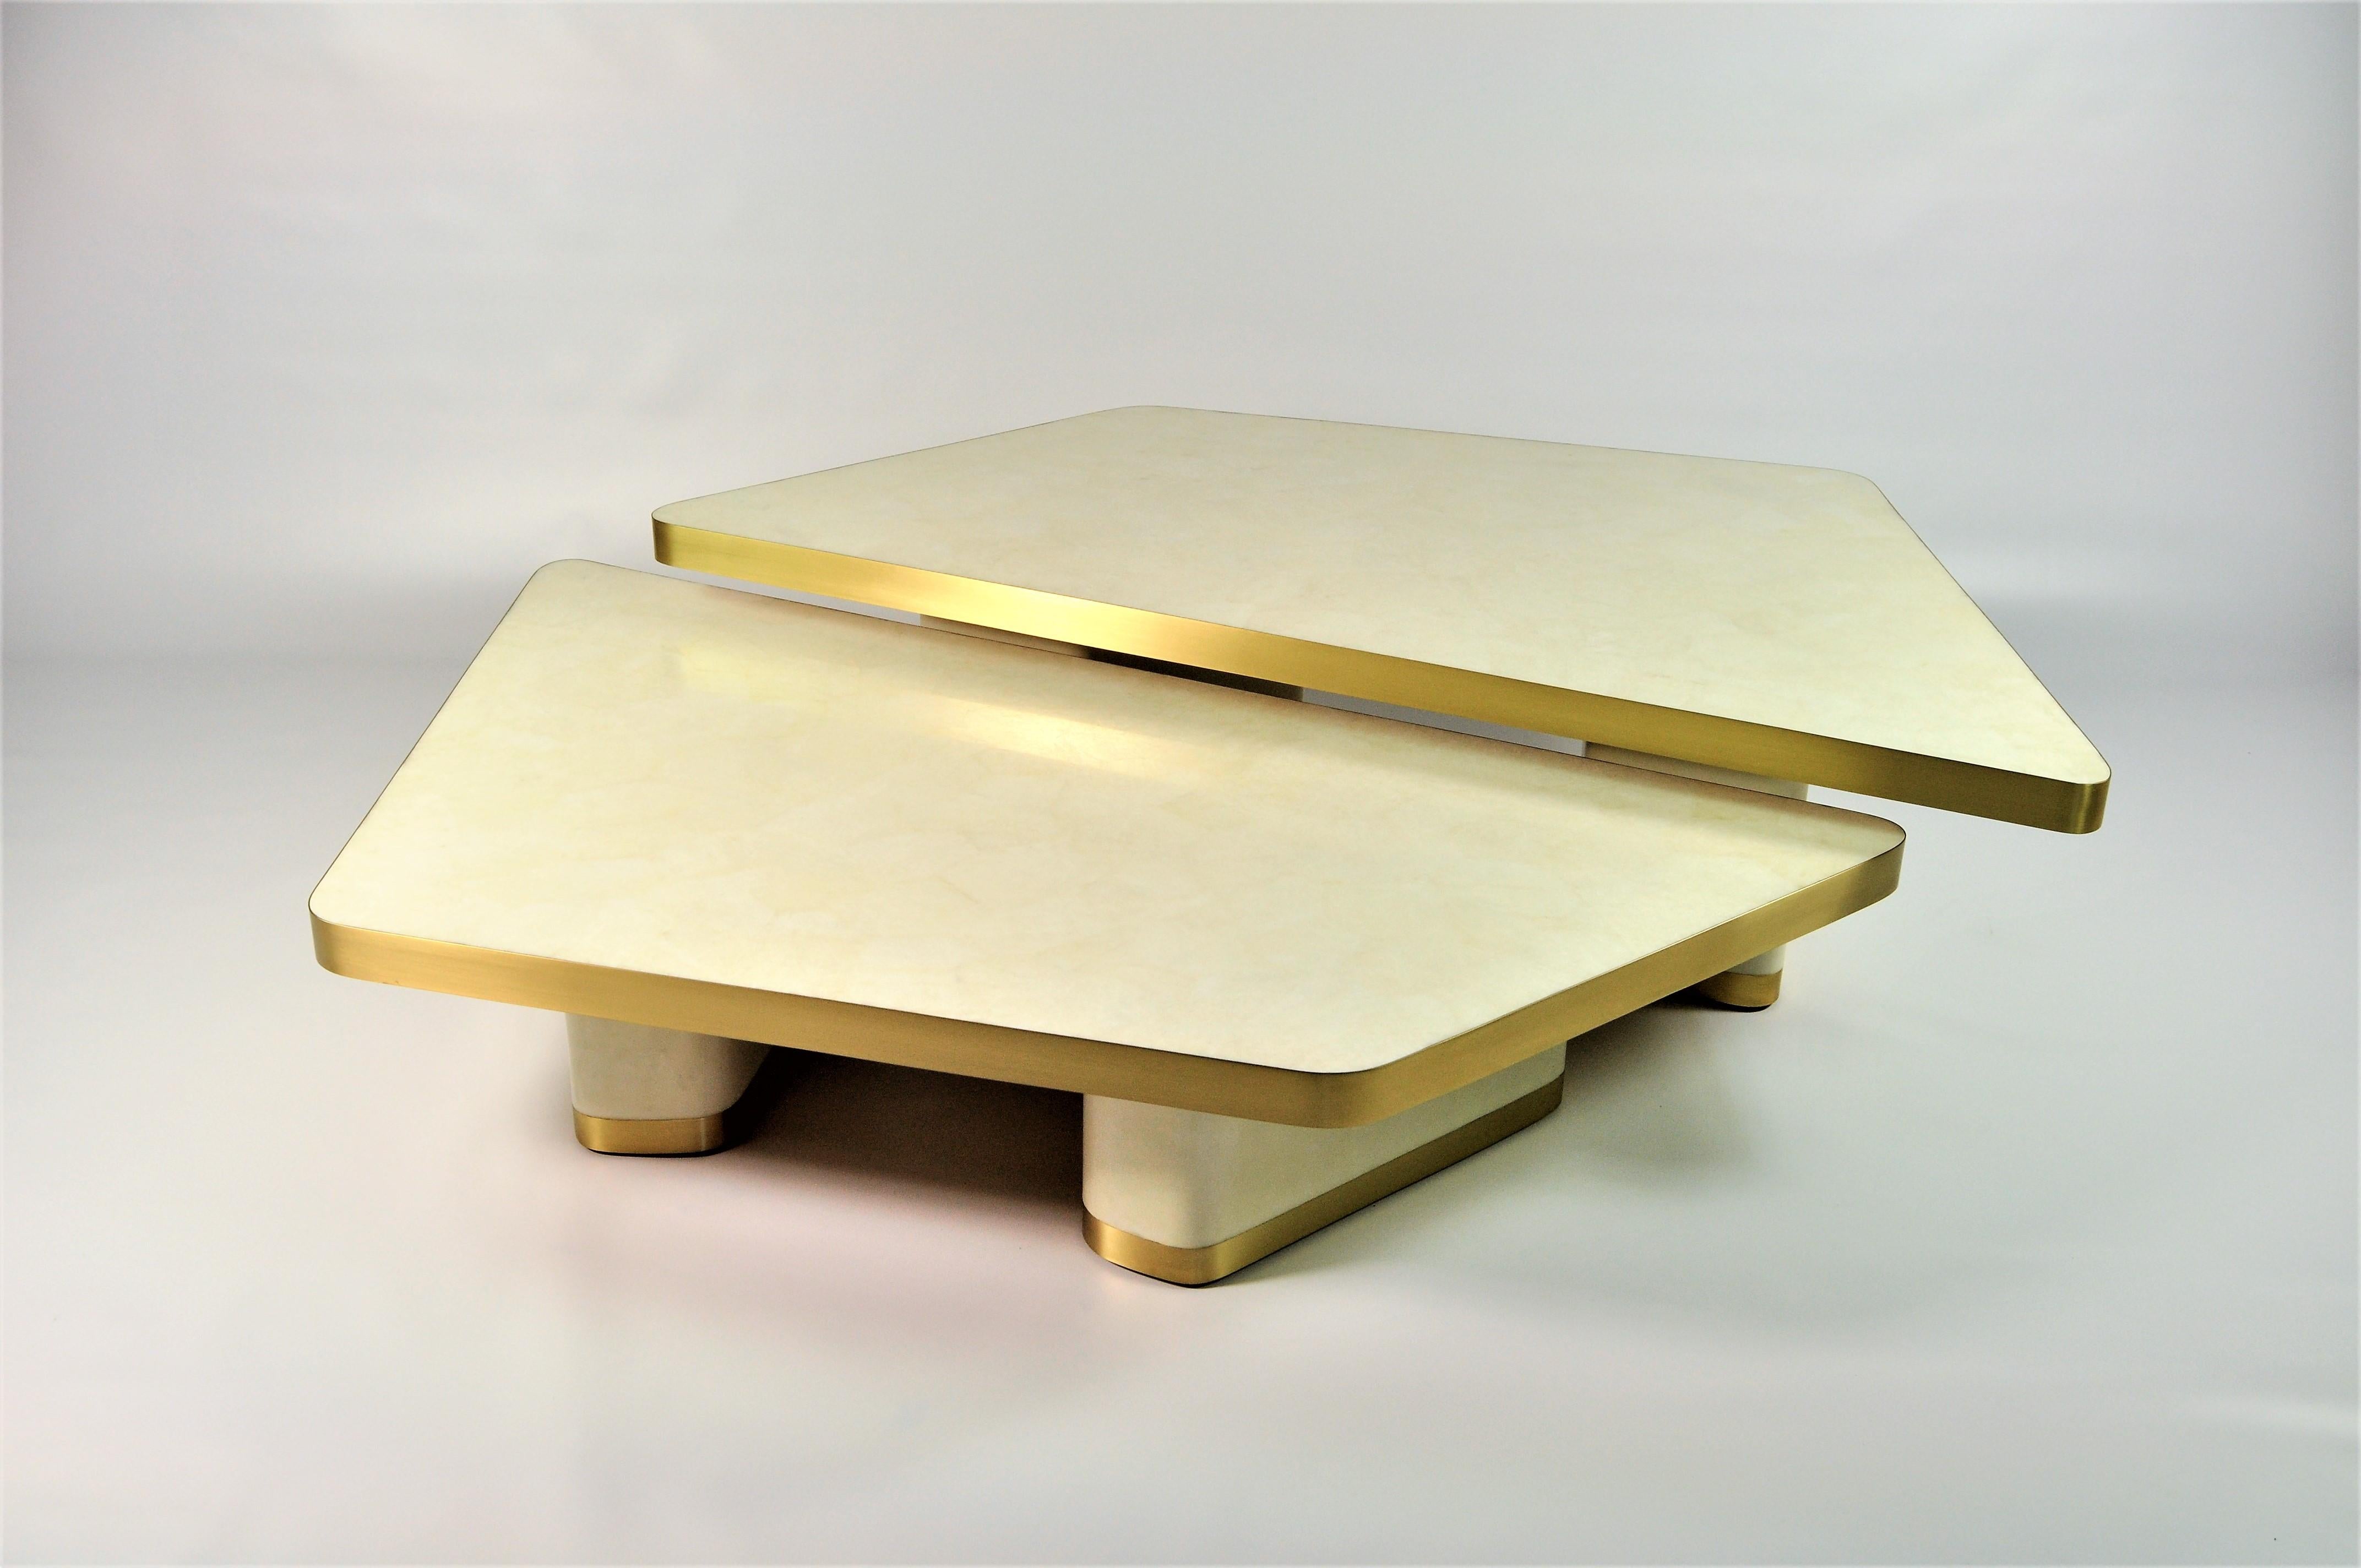 L'ensemble de 2 tables basses VELA est composé de différents matériaux incrustés.
Ces tables modulaires peuvent être installées selon vos souhaits.
Le plateau est en marqueterie de cristal de roche poli avec un bord en laiton brossé. 
Les pieds